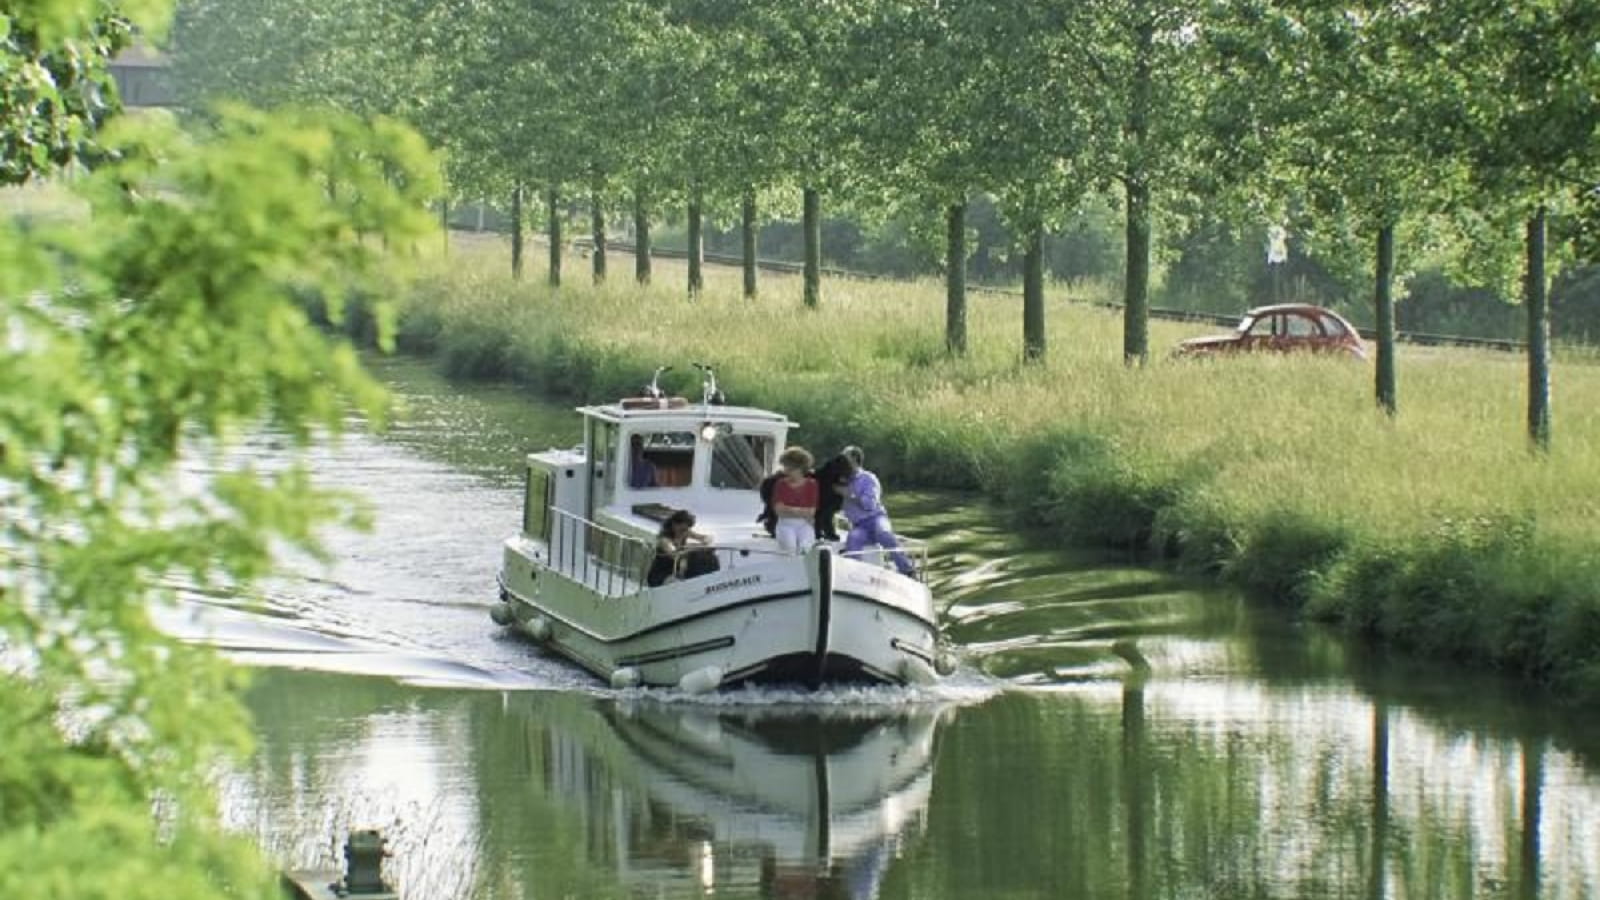 Canal Latéral à la Loire